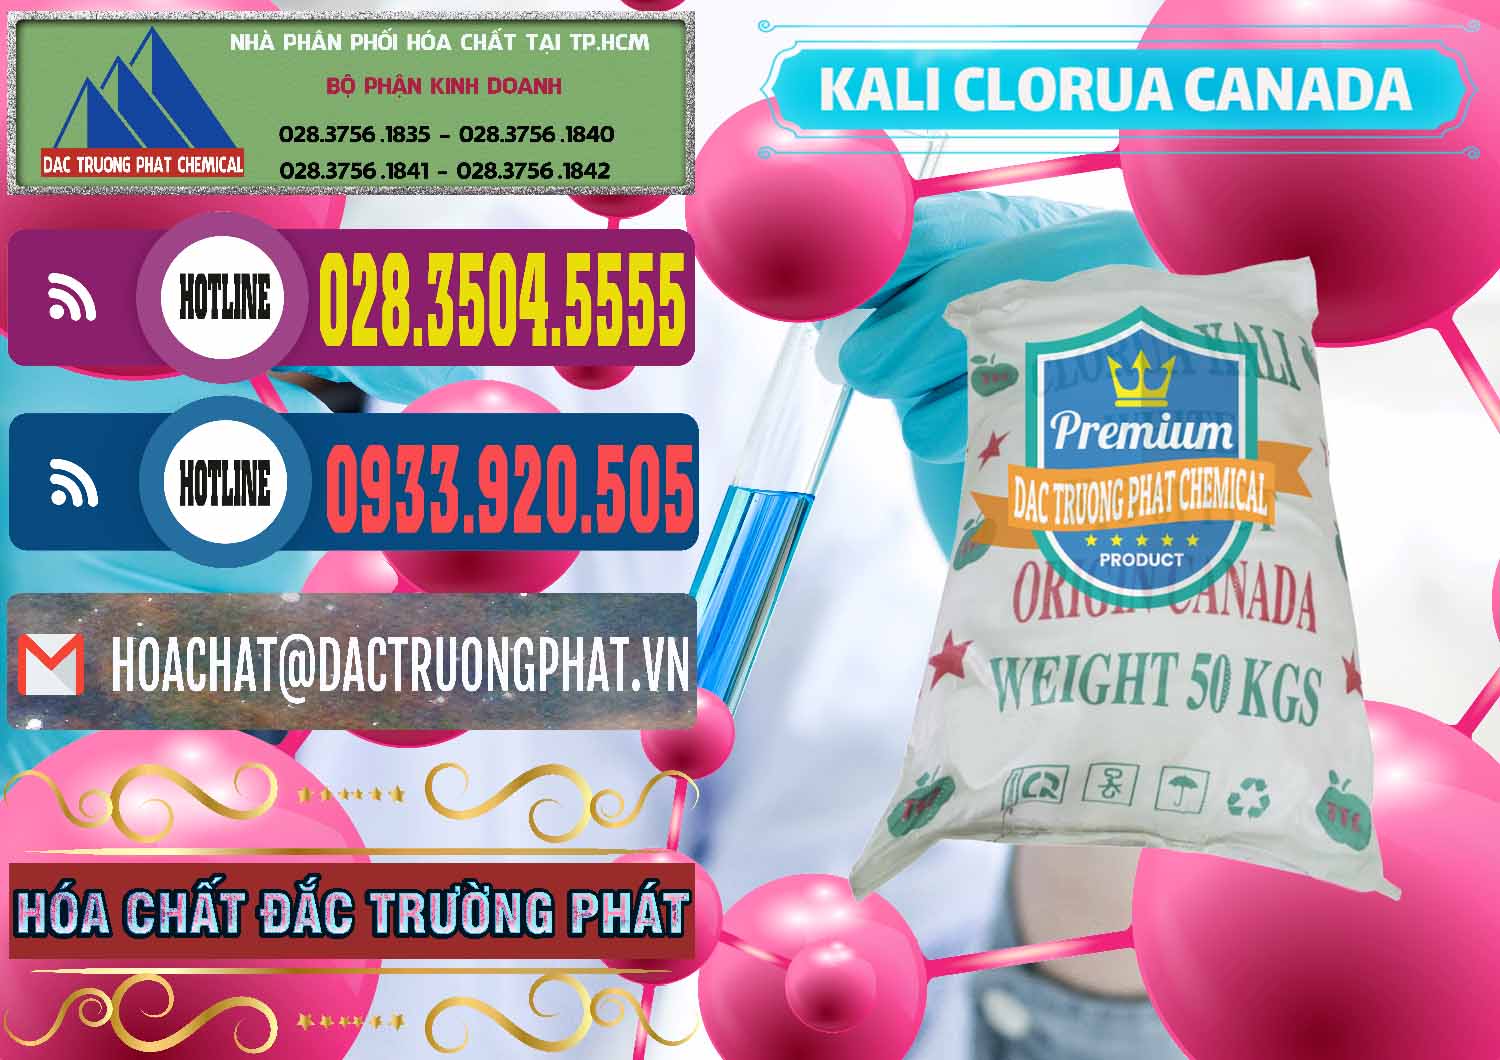 Chuyên bán ( cung cấp ) KCL – Kali Clorua Trắng Canada - 0437 - Công ty nhập khẩu và phân phối hóa chất tại TP.HCM - muabanhoachat.com.vn